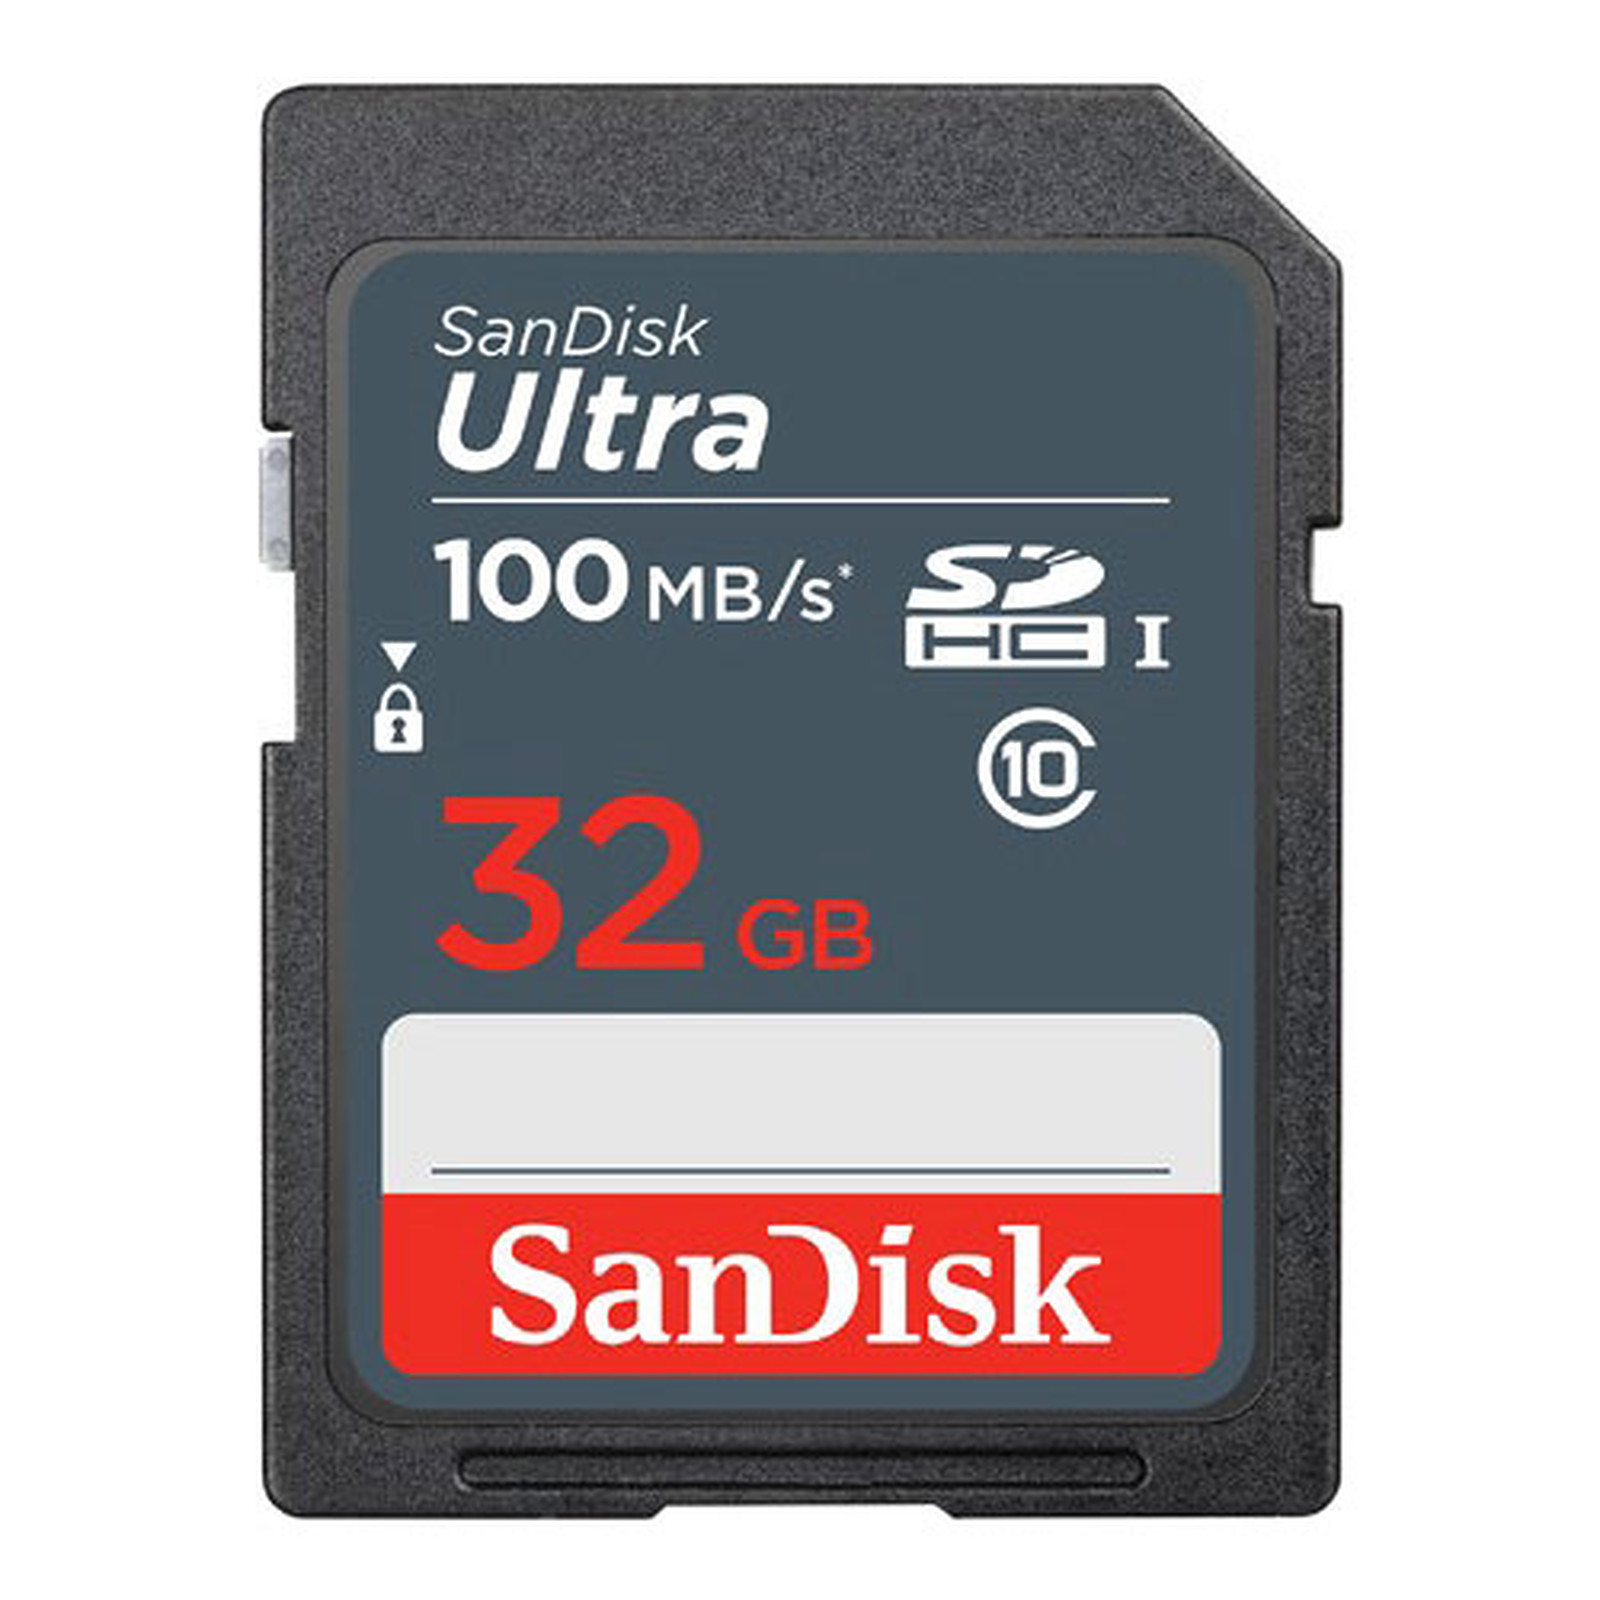 SanDisk Ultra SDHC UHS-I 32 Go (SDSDUNR-032G-GN3IN) - Carte memoire Sandisk